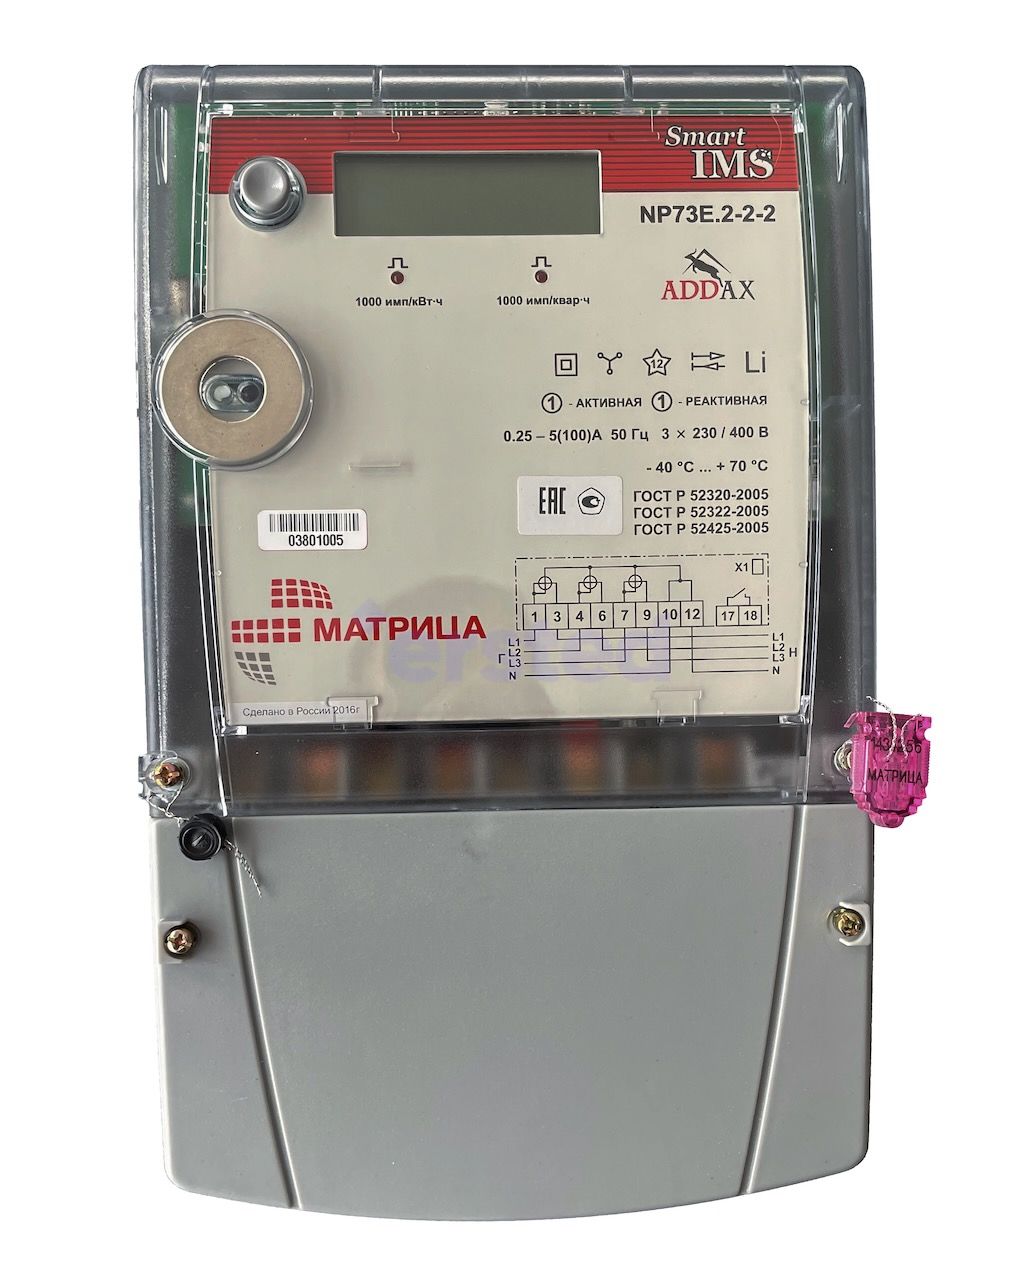 Матрица NP 73E.2-2-2 | 3x230/400В, 5-100А, GSM | Электросчетчик трехфазный, многотарифный, прямого включения, фото 